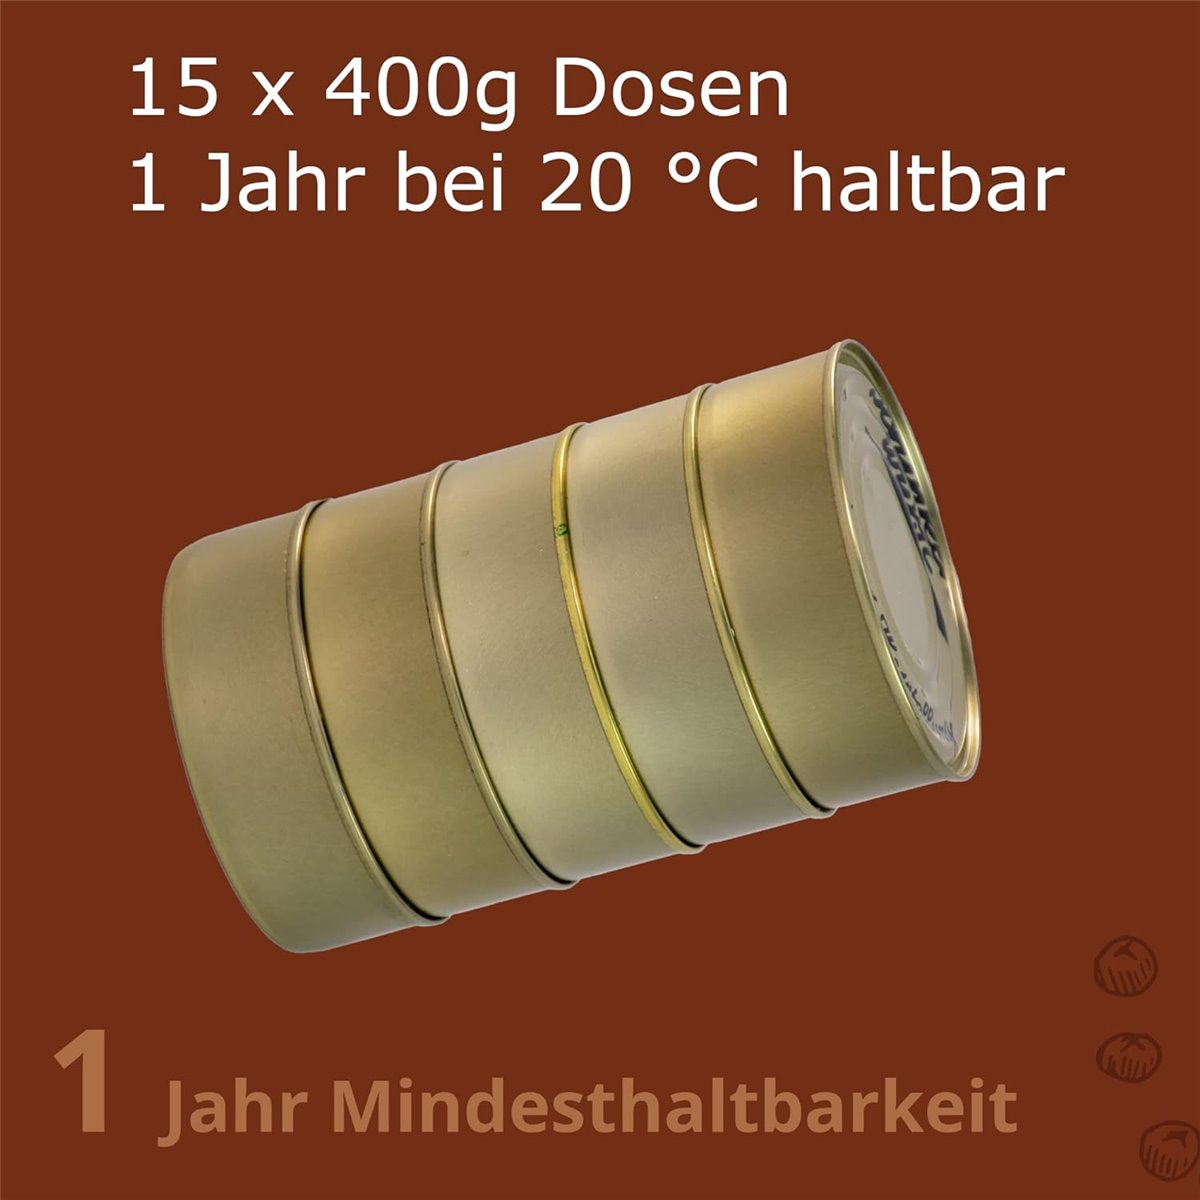 Großpaket Dosenwurst-Set 15 x 400g Dosen - mit gratis Frischedeckel
